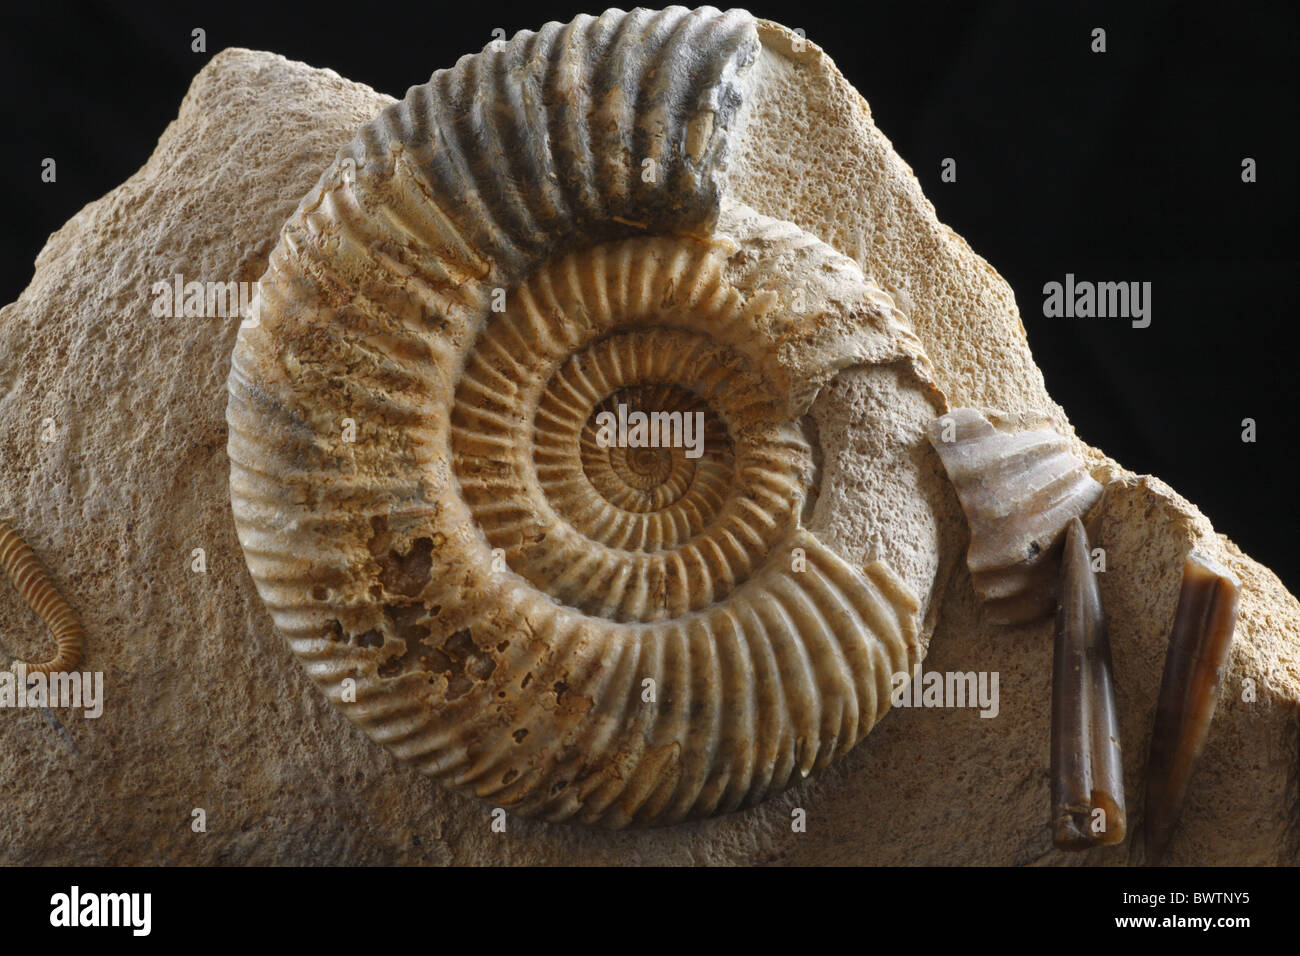 Combustibili fossili di ammonita jurassic Inghilterra inglese Parkinsonia conchiglia dei molluschi invertebrati fossilizzazione rock europeo in europa Foto Stock